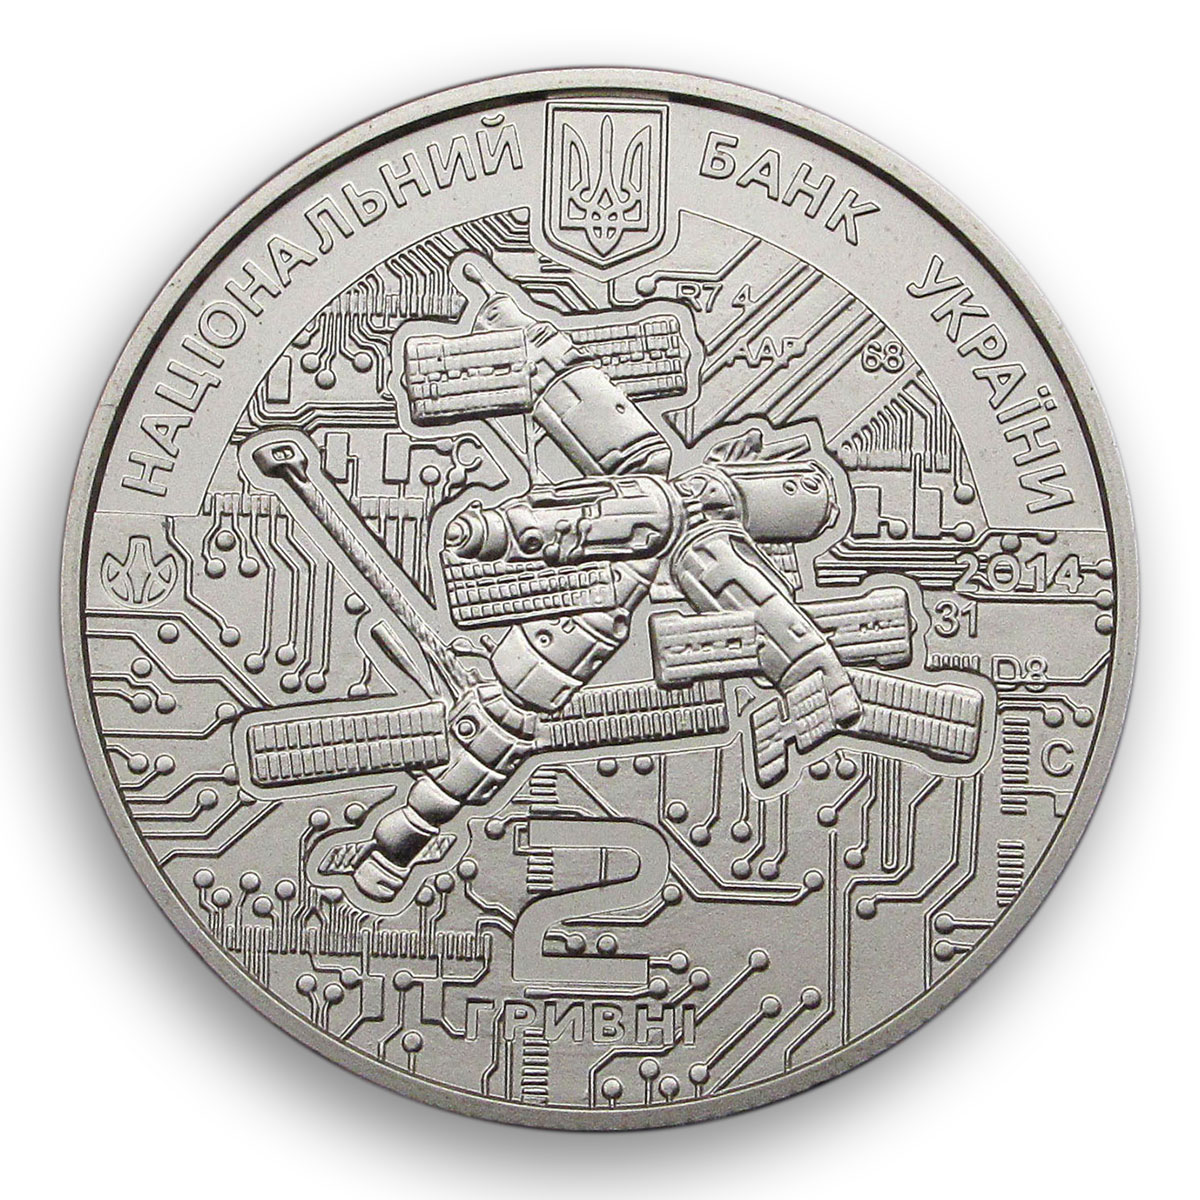 Ukraine 2 hryvnia Volodymyr Serhieiev rocket science spacecraft nickel coin 2014